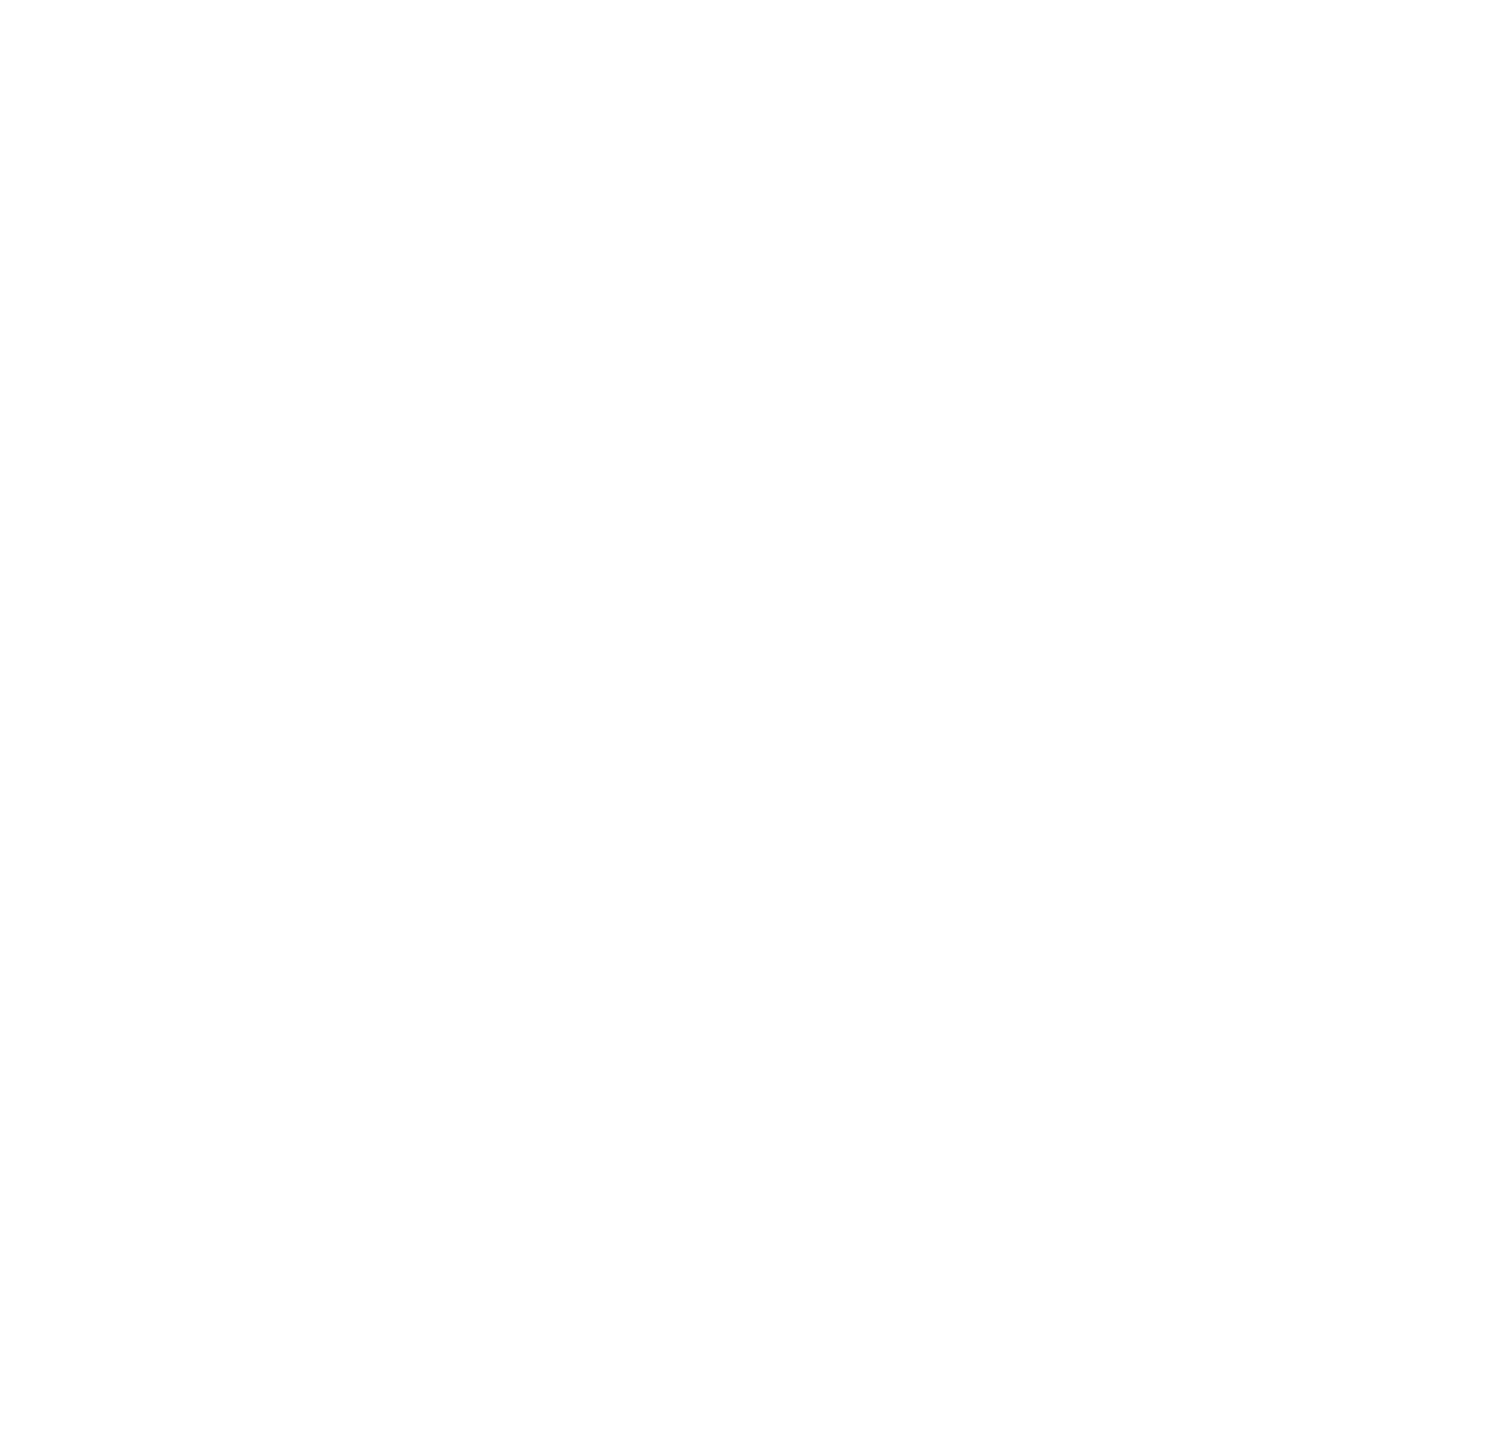 Valley & Peak